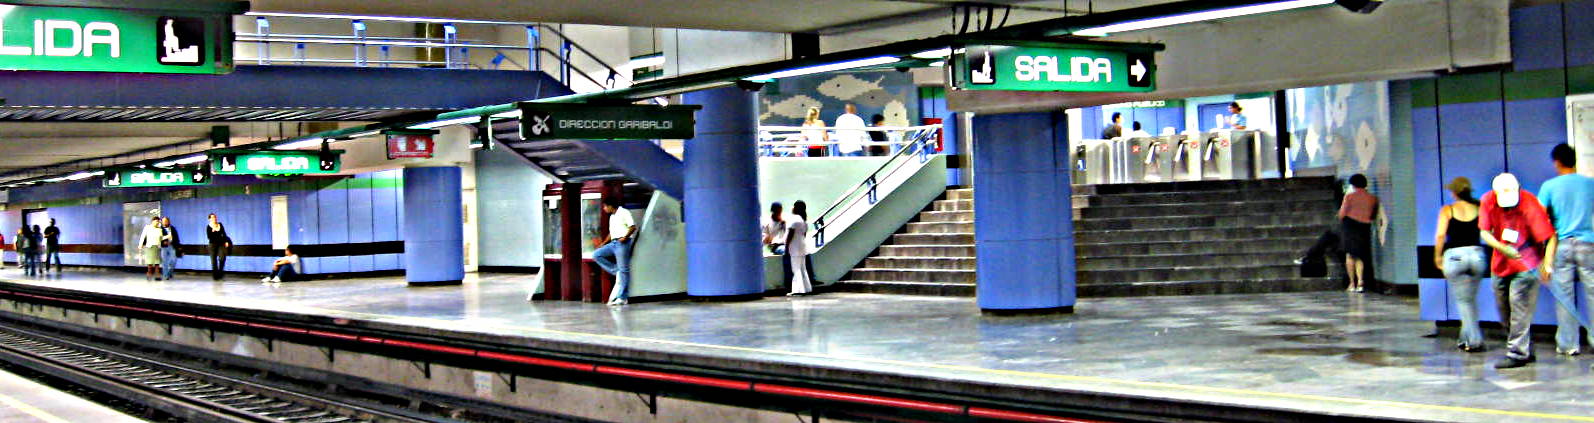 Metro La Viga